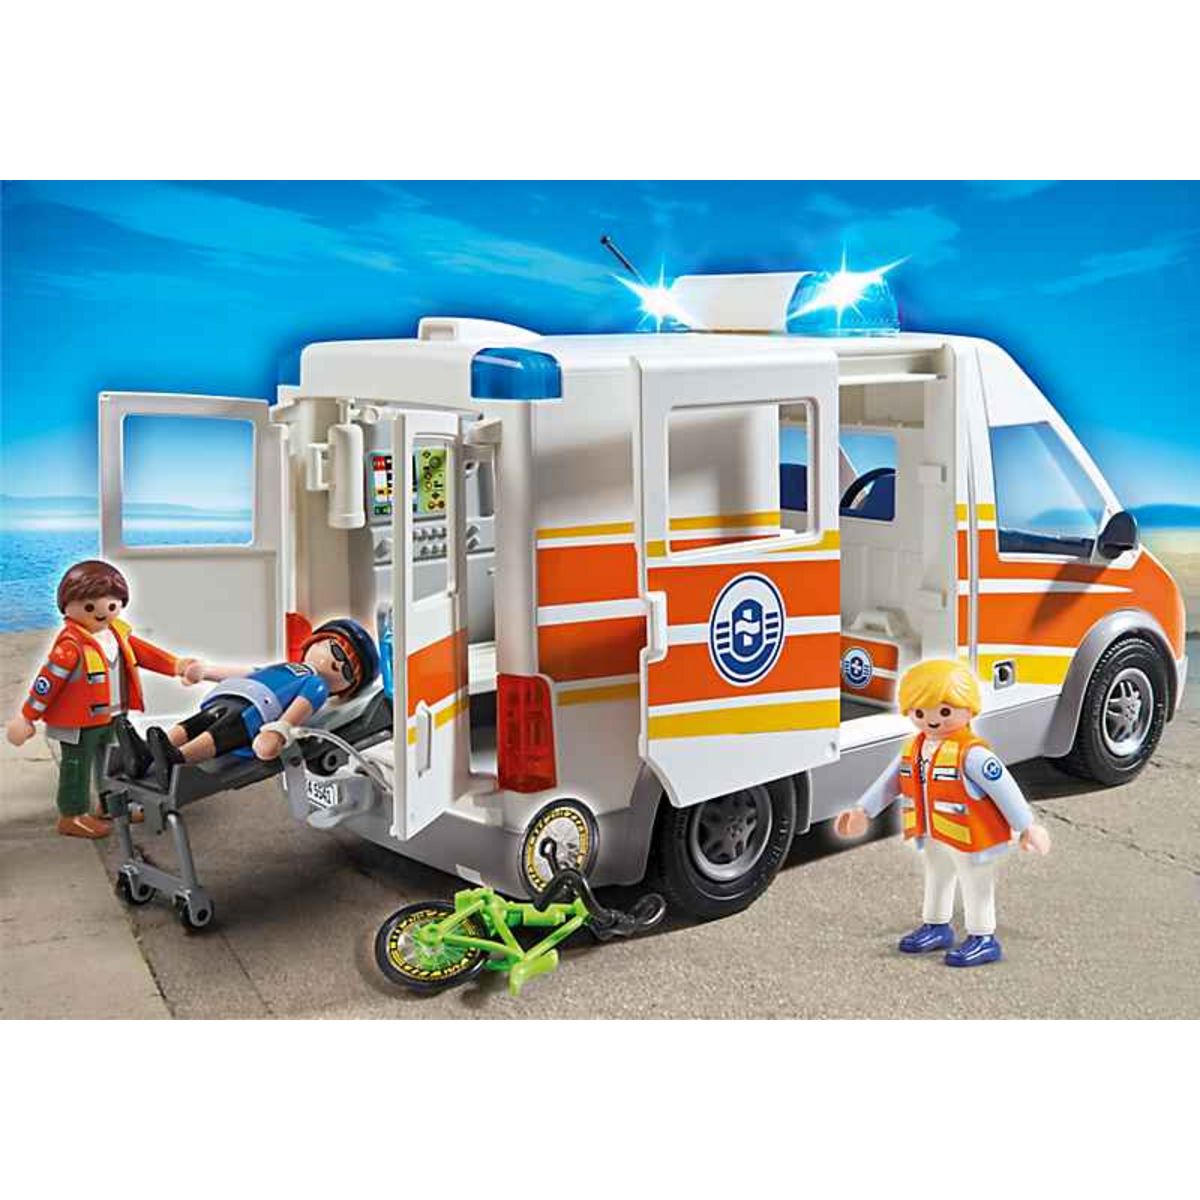 PLAYMOBIL 5541 Ambulance avec secouriste pas cher 